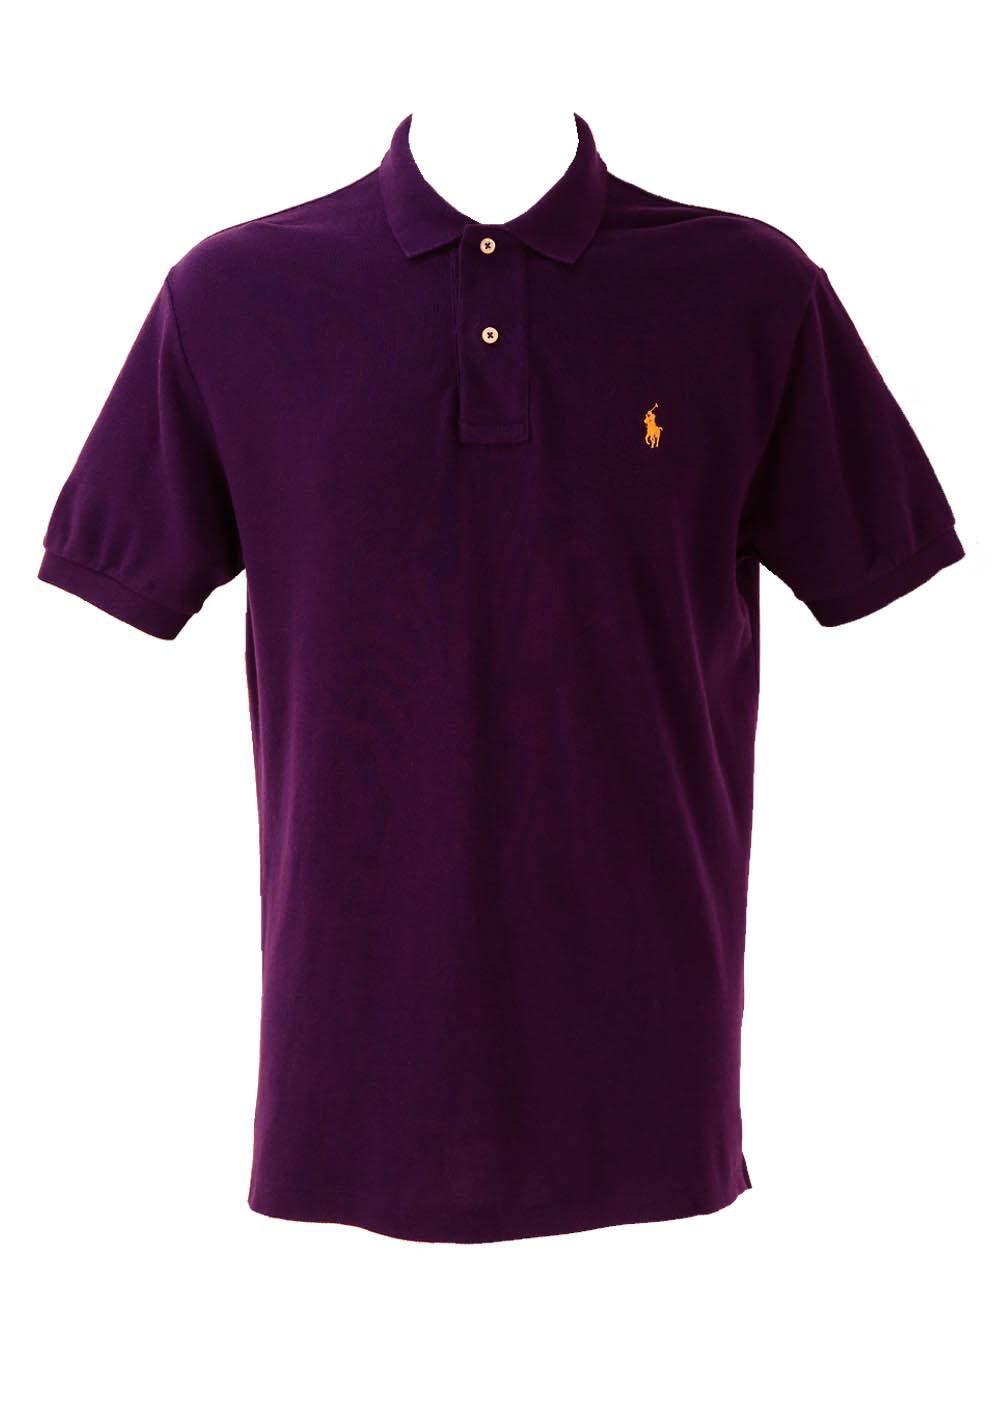 Polo by Ralph Lauren Purple Polo Shirt - M/L | Reign Vintage